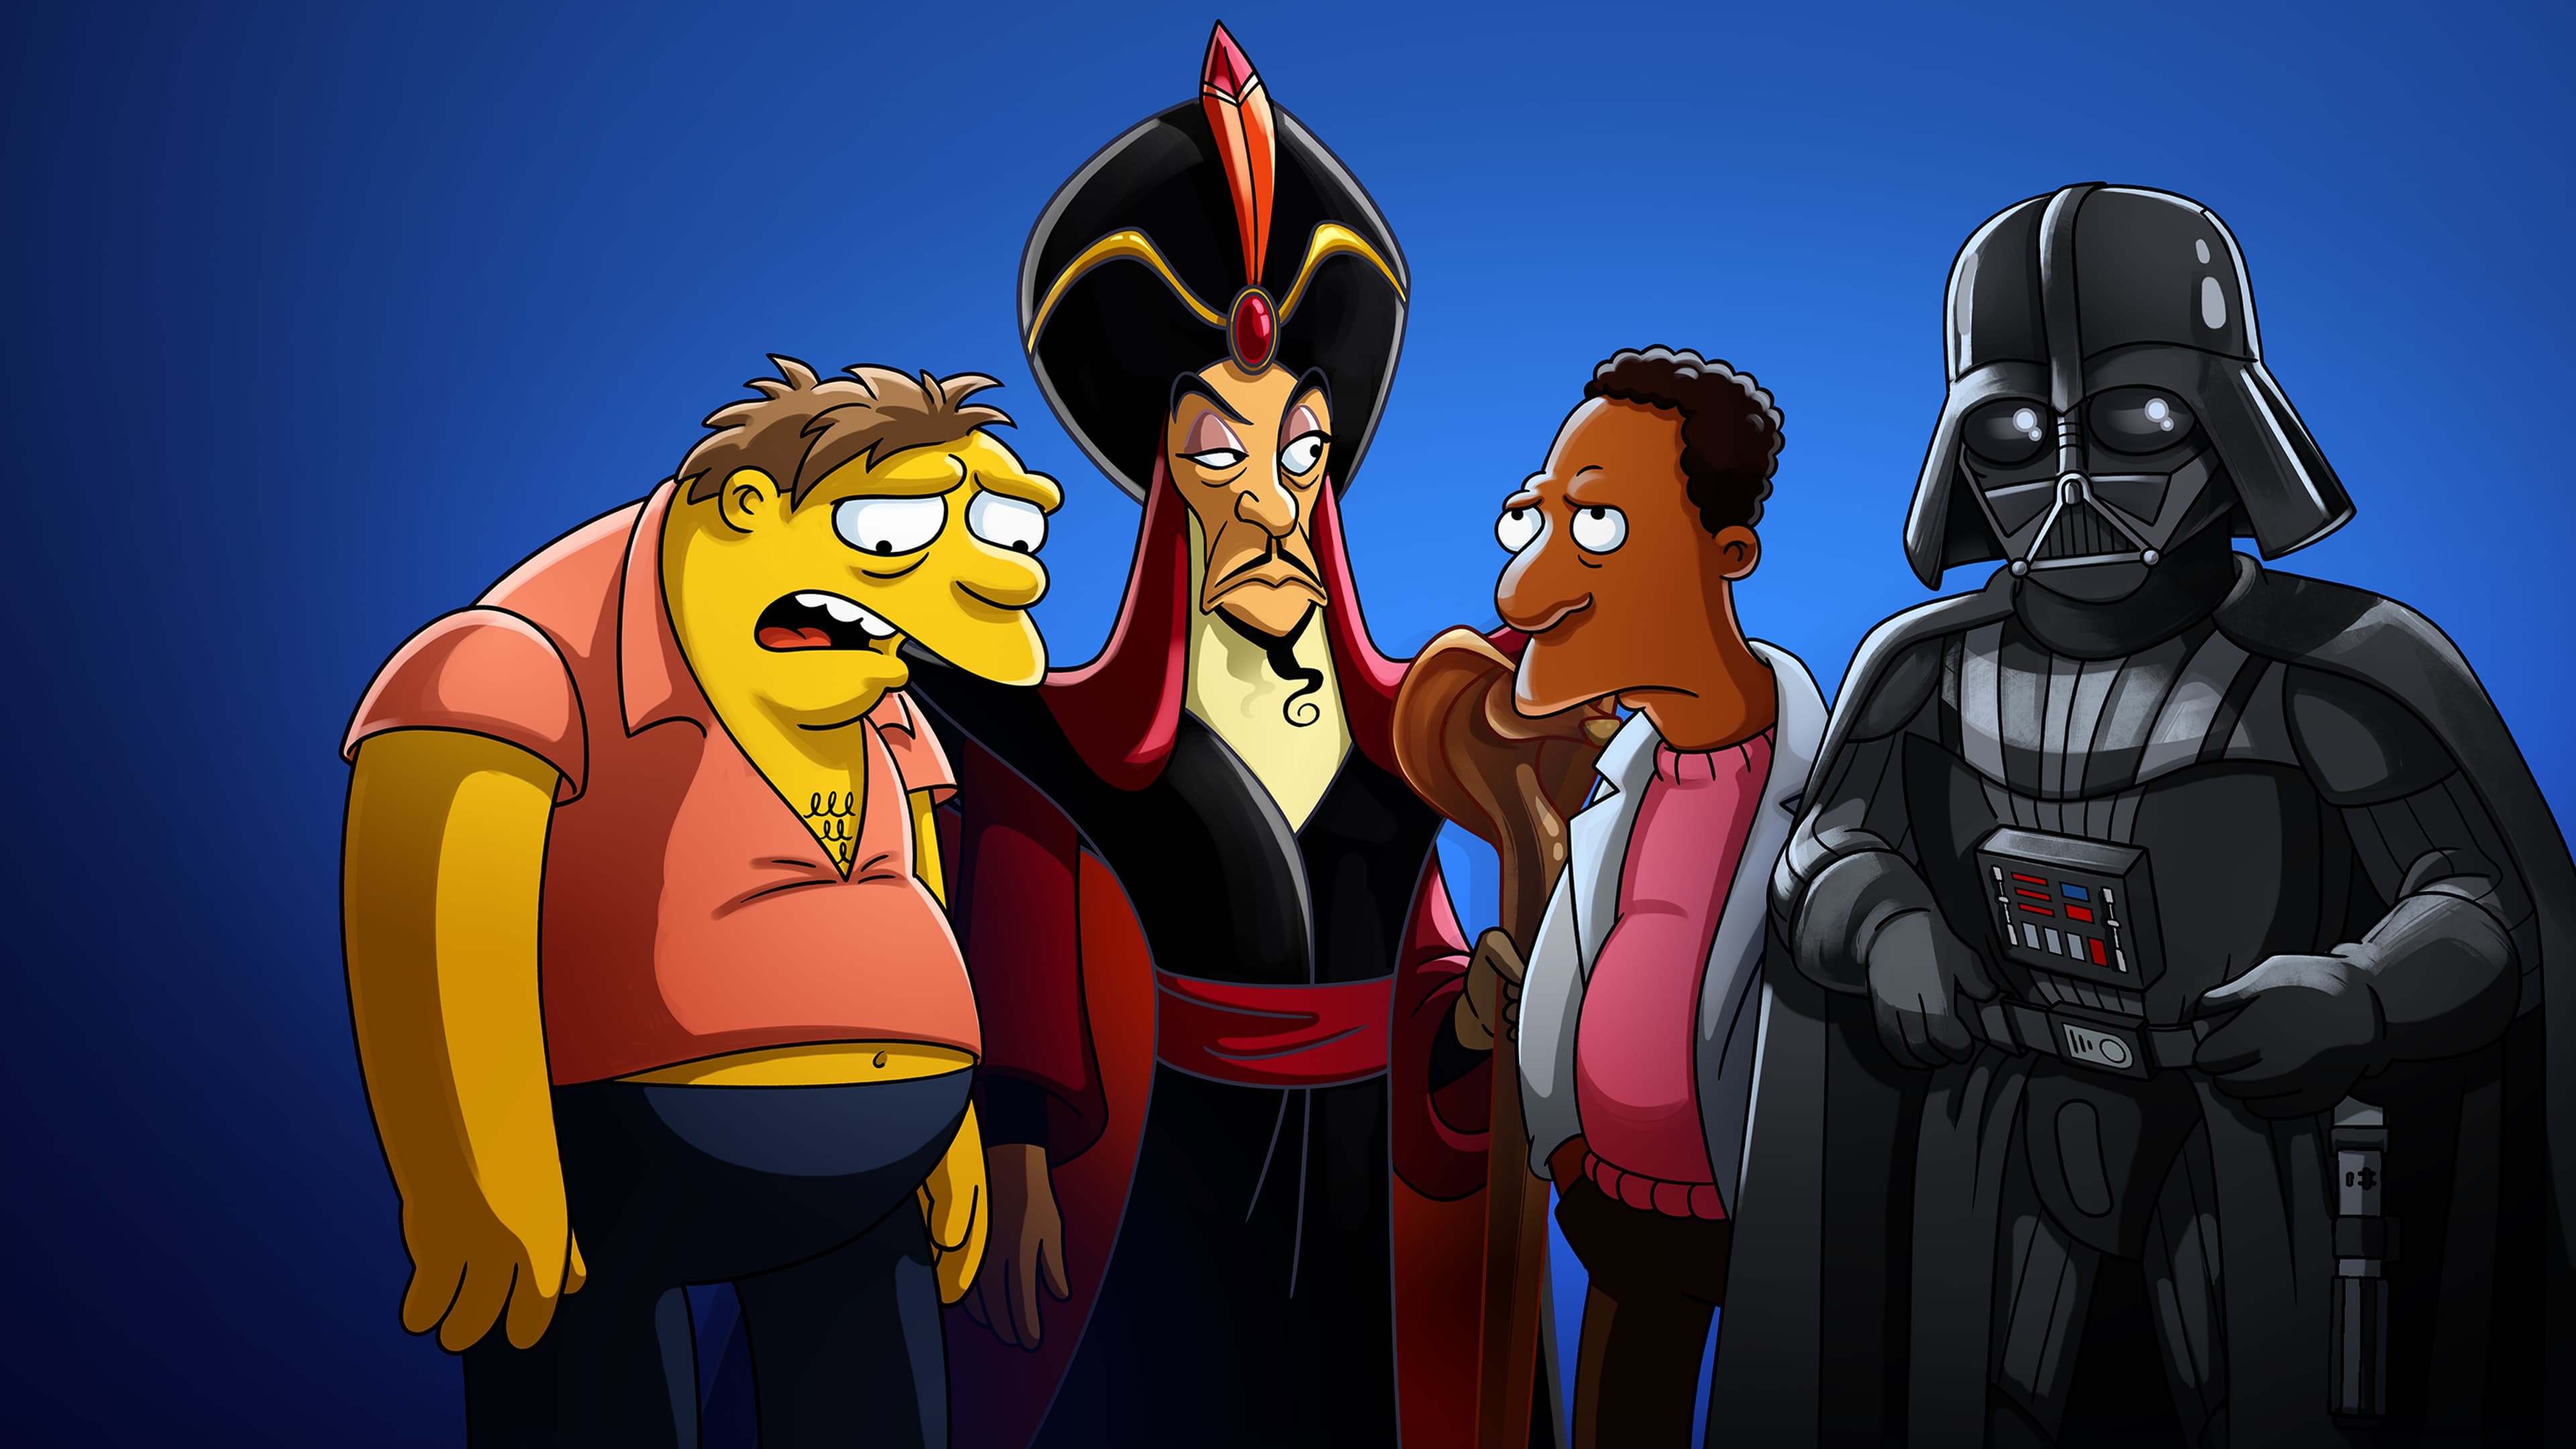 พลัสเซอร์ไพรส์ The Simpsons in Plusaversary ออนไลน์โดยสมบูรณ์ในปี 2021